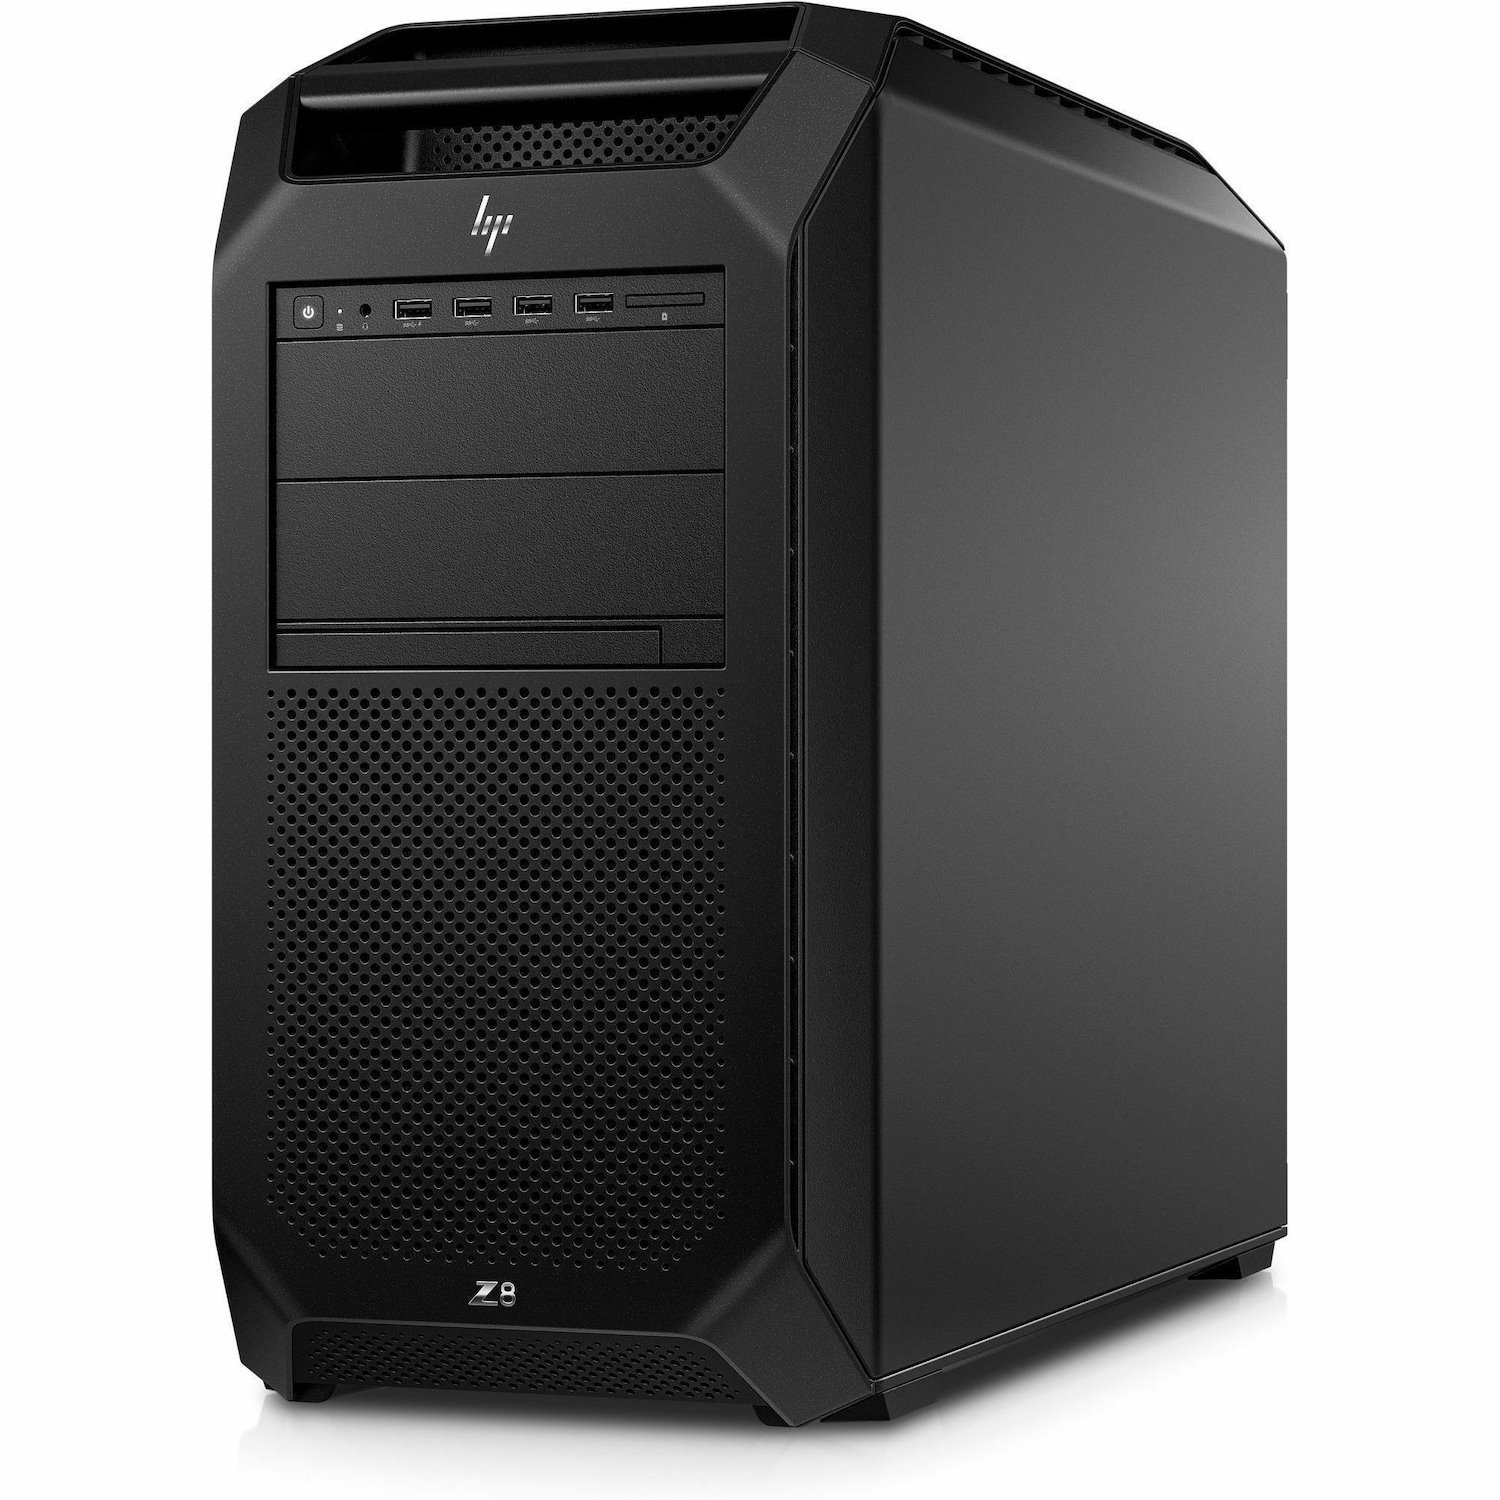 HP Z8 G5 Workstation - Intel Xeon Gold 5418Y - 64 GB - 1 TB SSD - Tower - Black